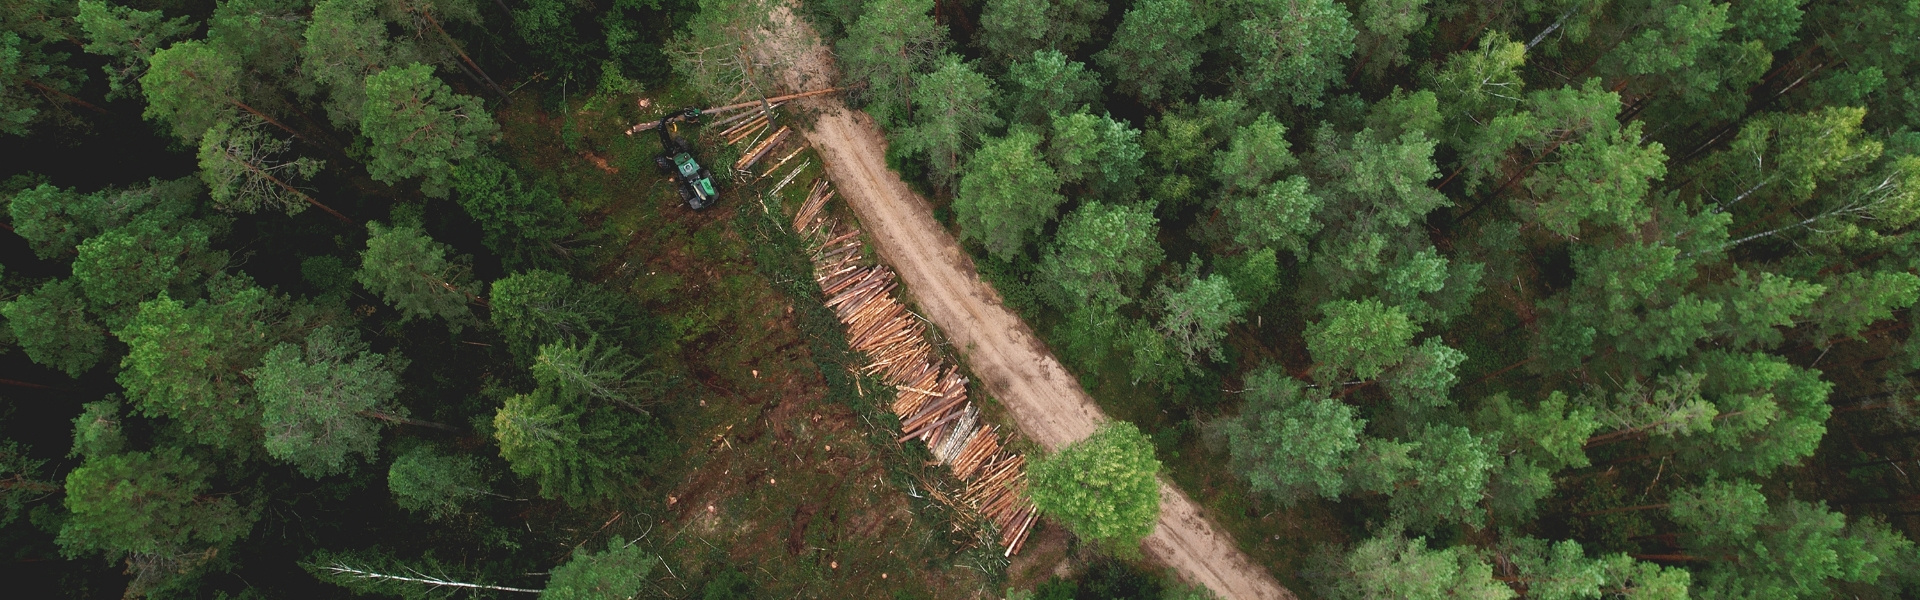 Gallring av skog, flygbild